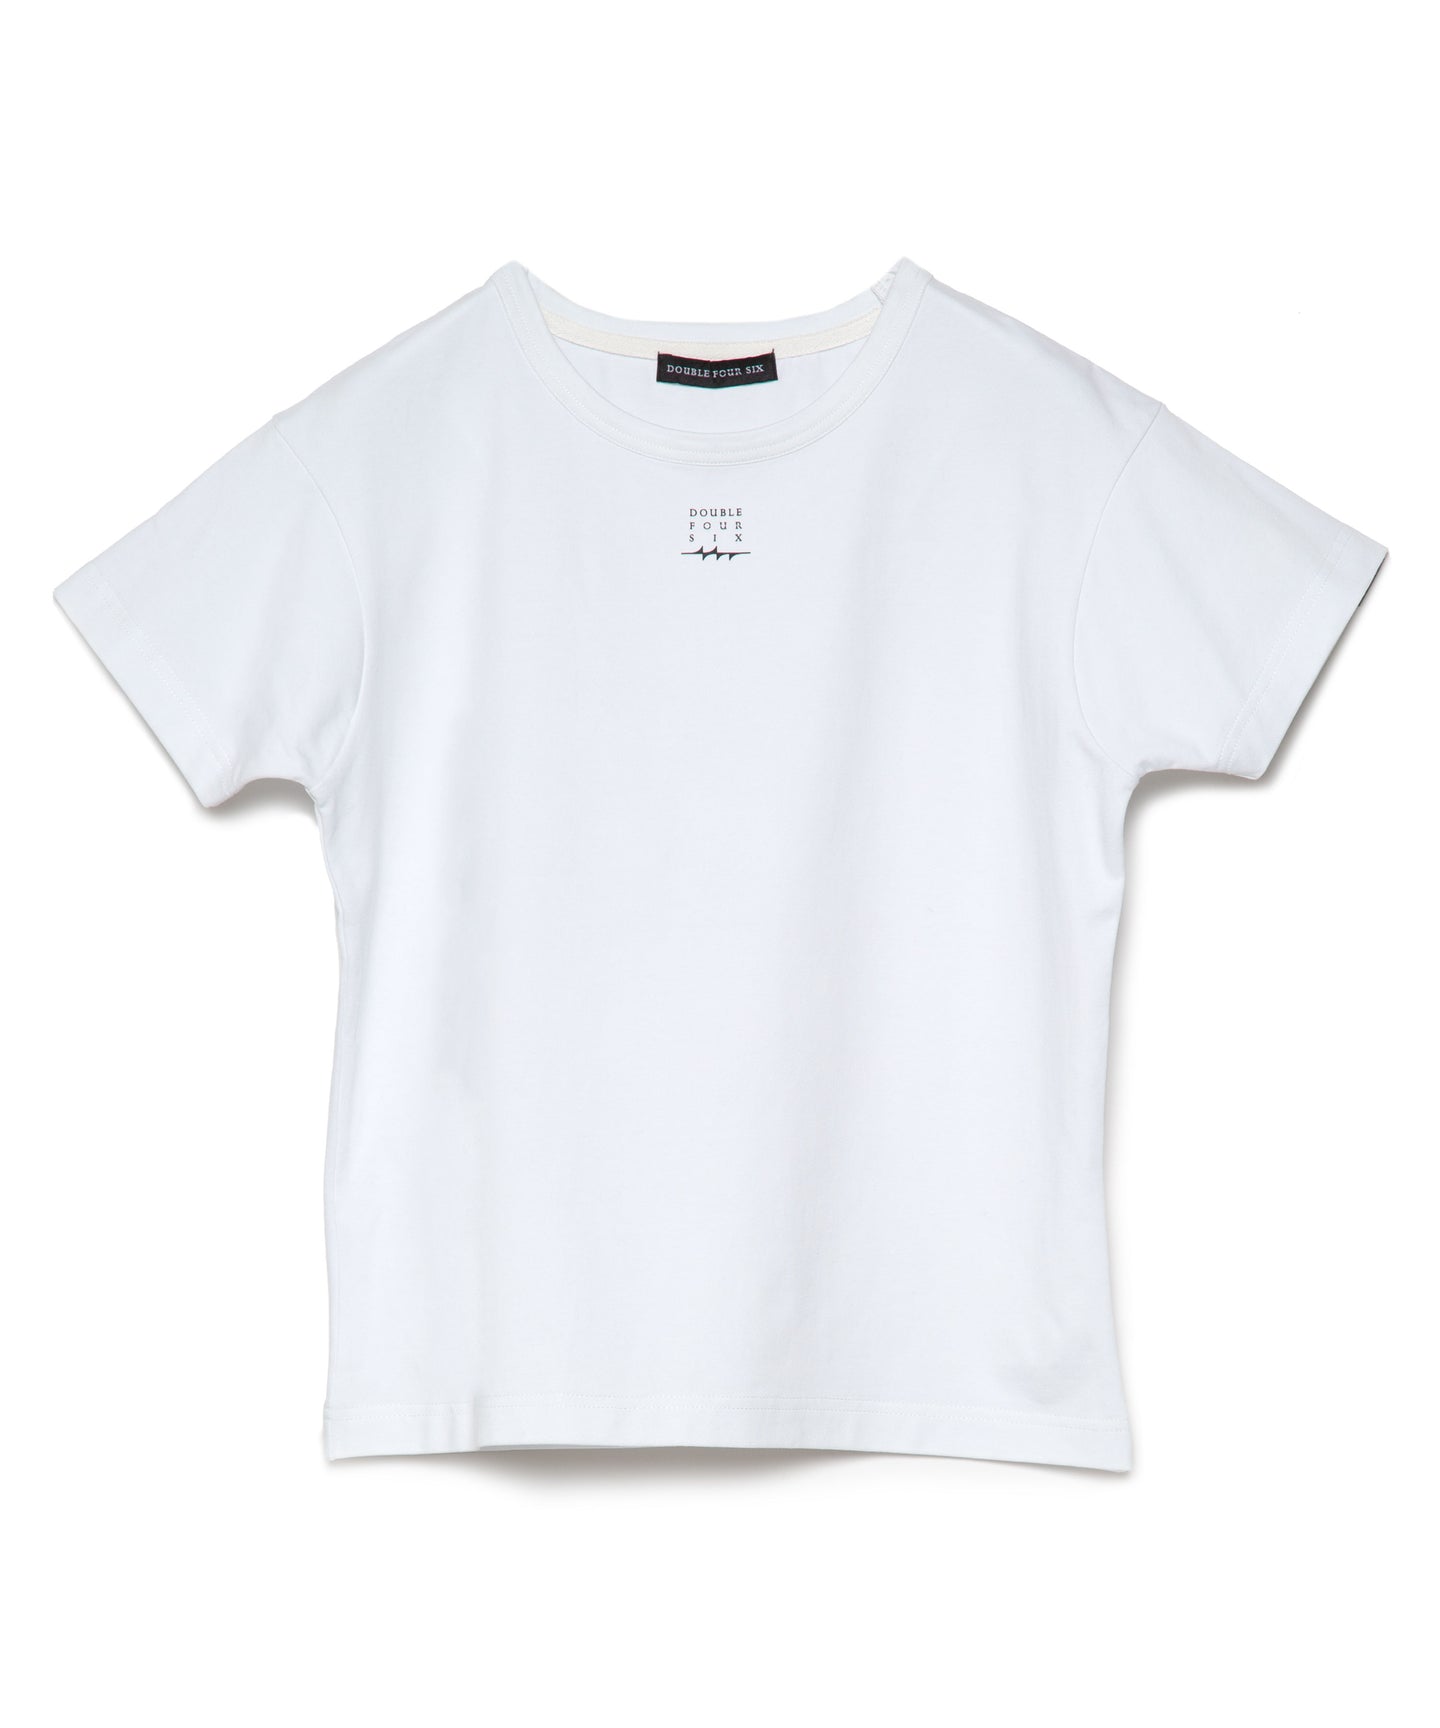 【数量限定商品】DOUBLE FOUR SIX- Square Logo Mini T-shirt  White